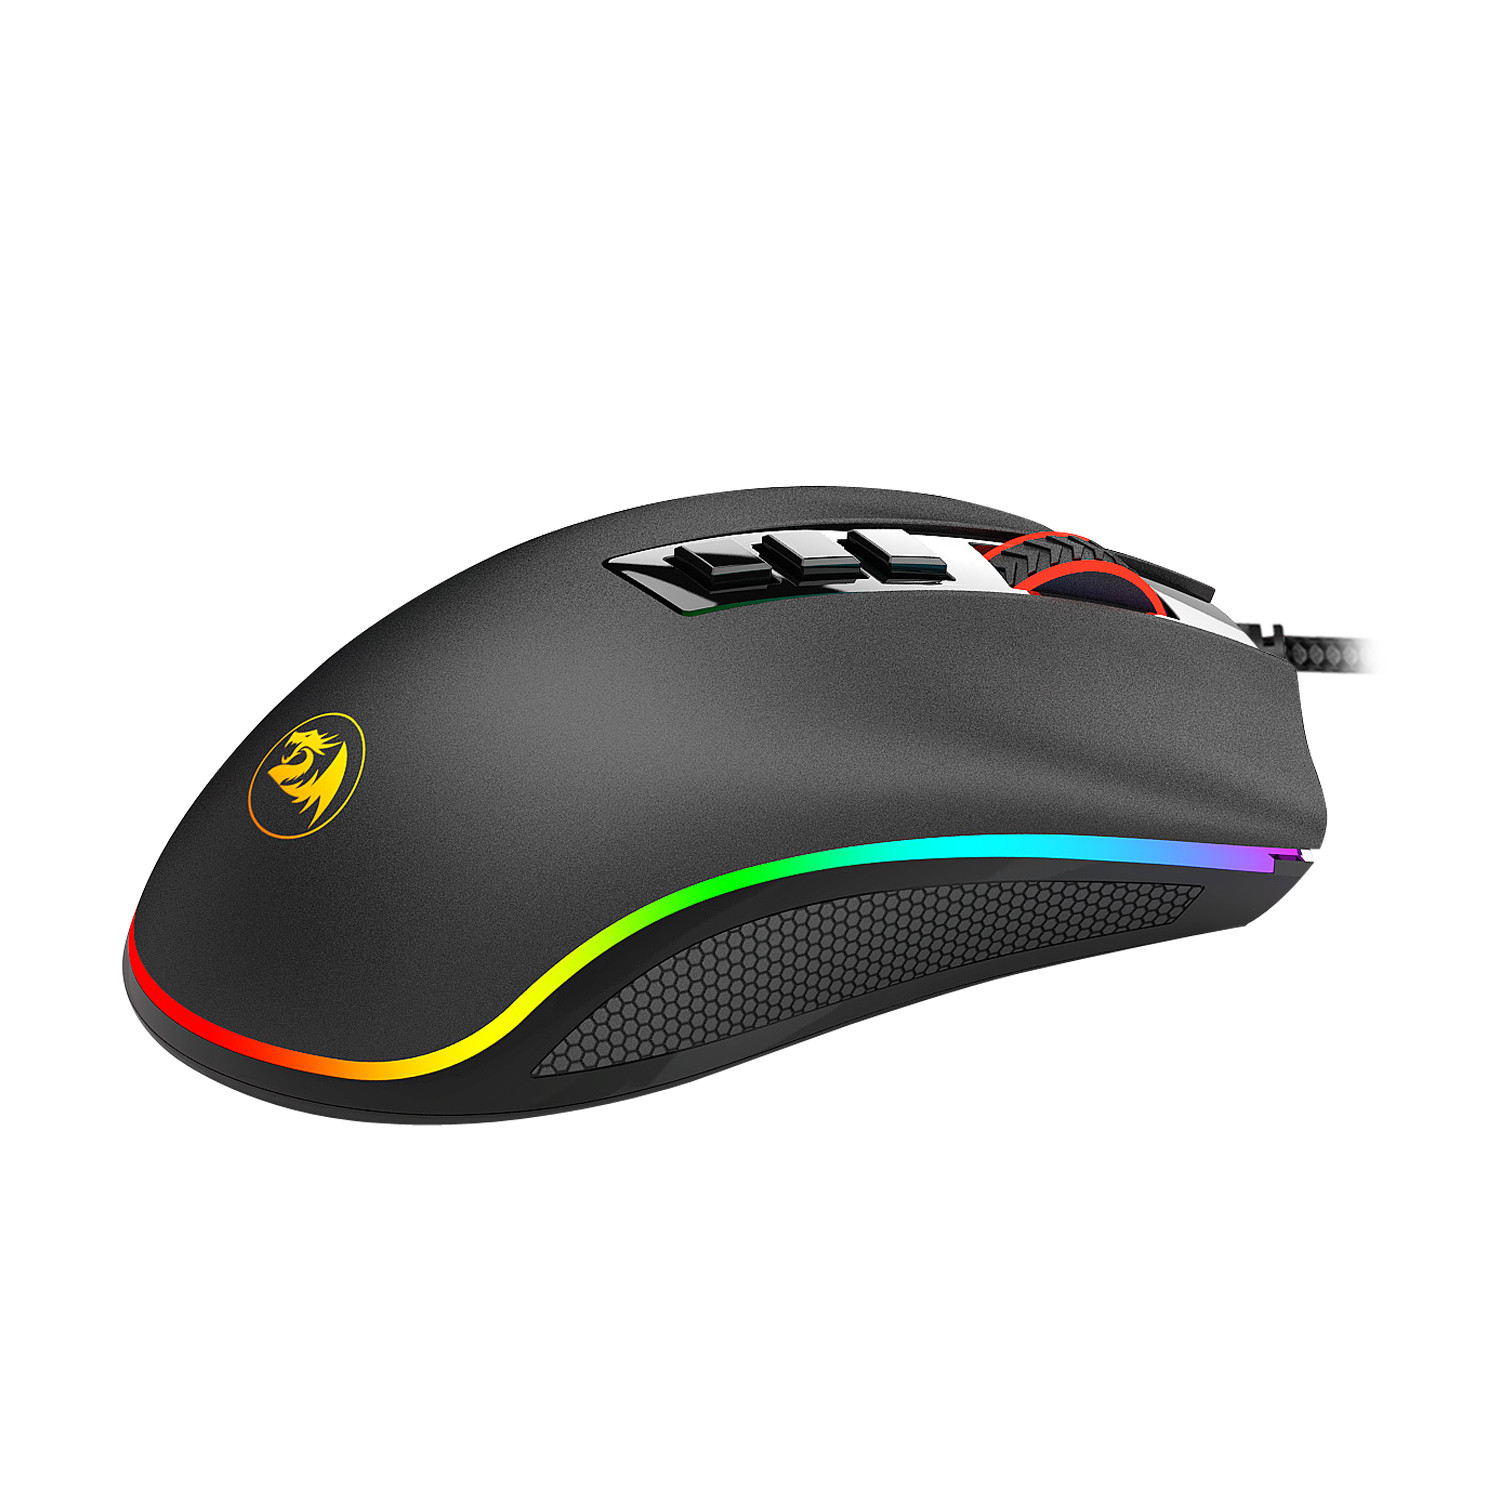 Imagen Mouse Gamer Redragon Cobra M711 3